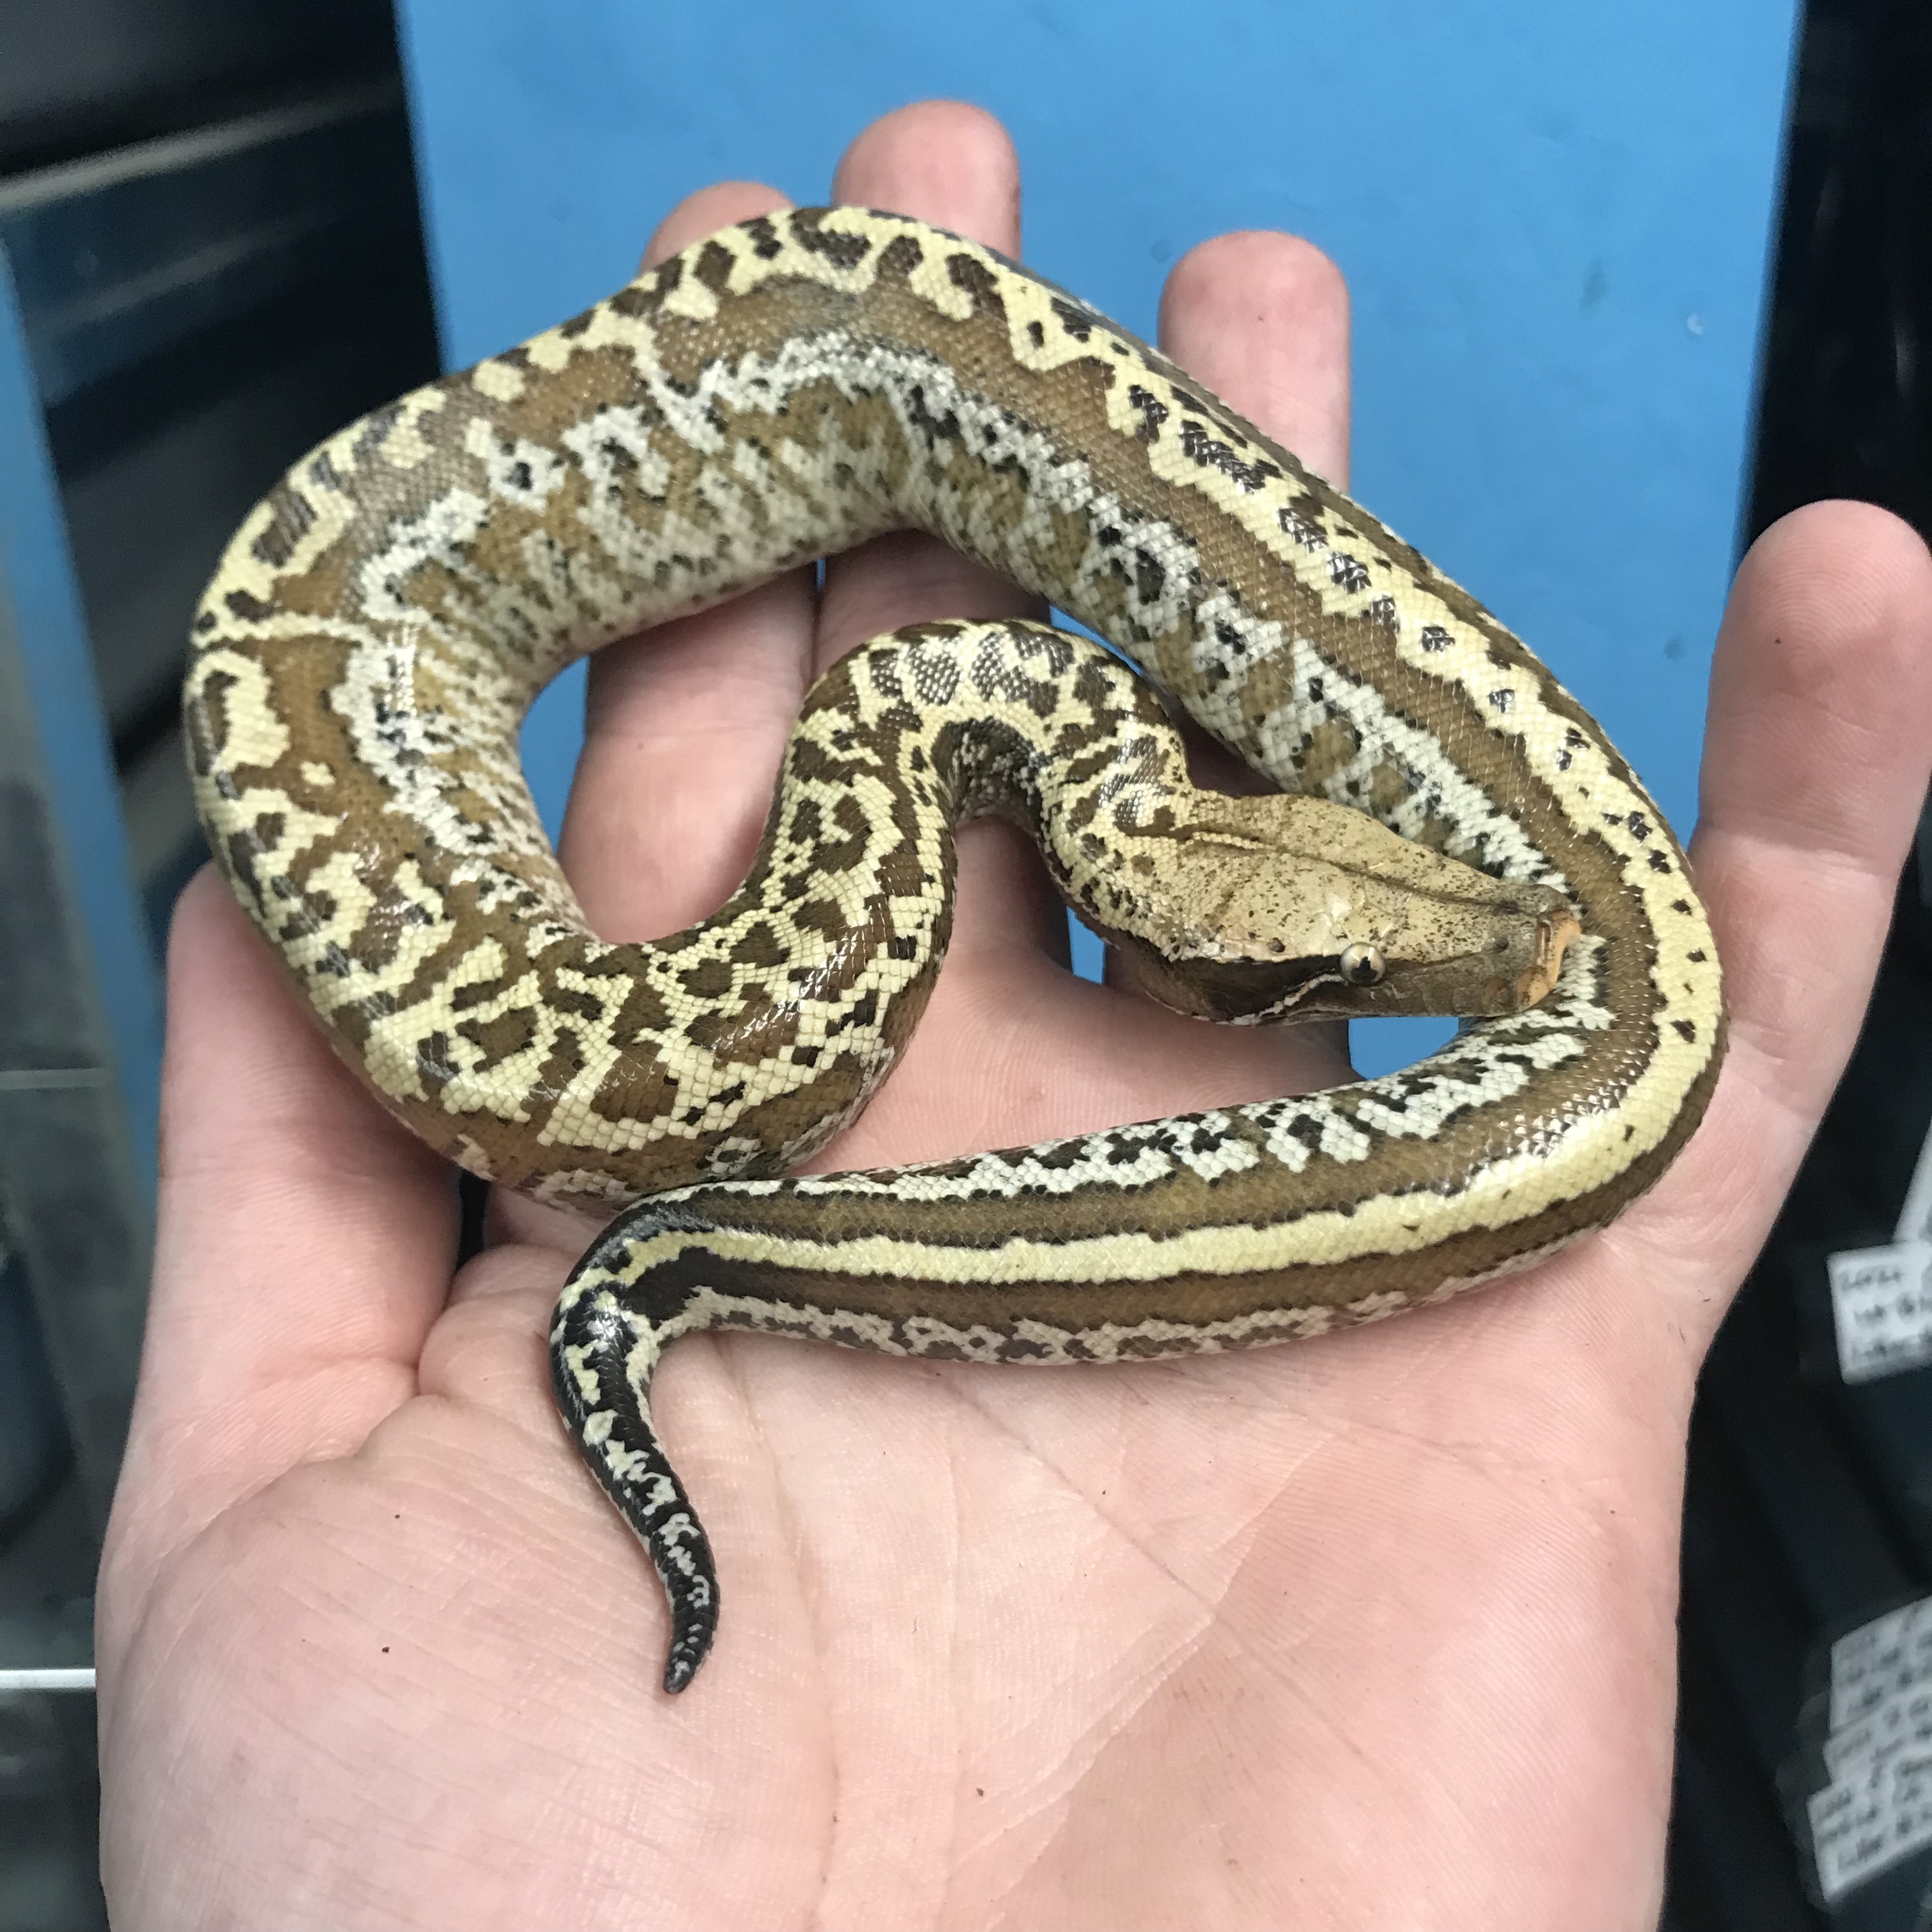 Female Batik Blood Python by Gx3 Reptiles